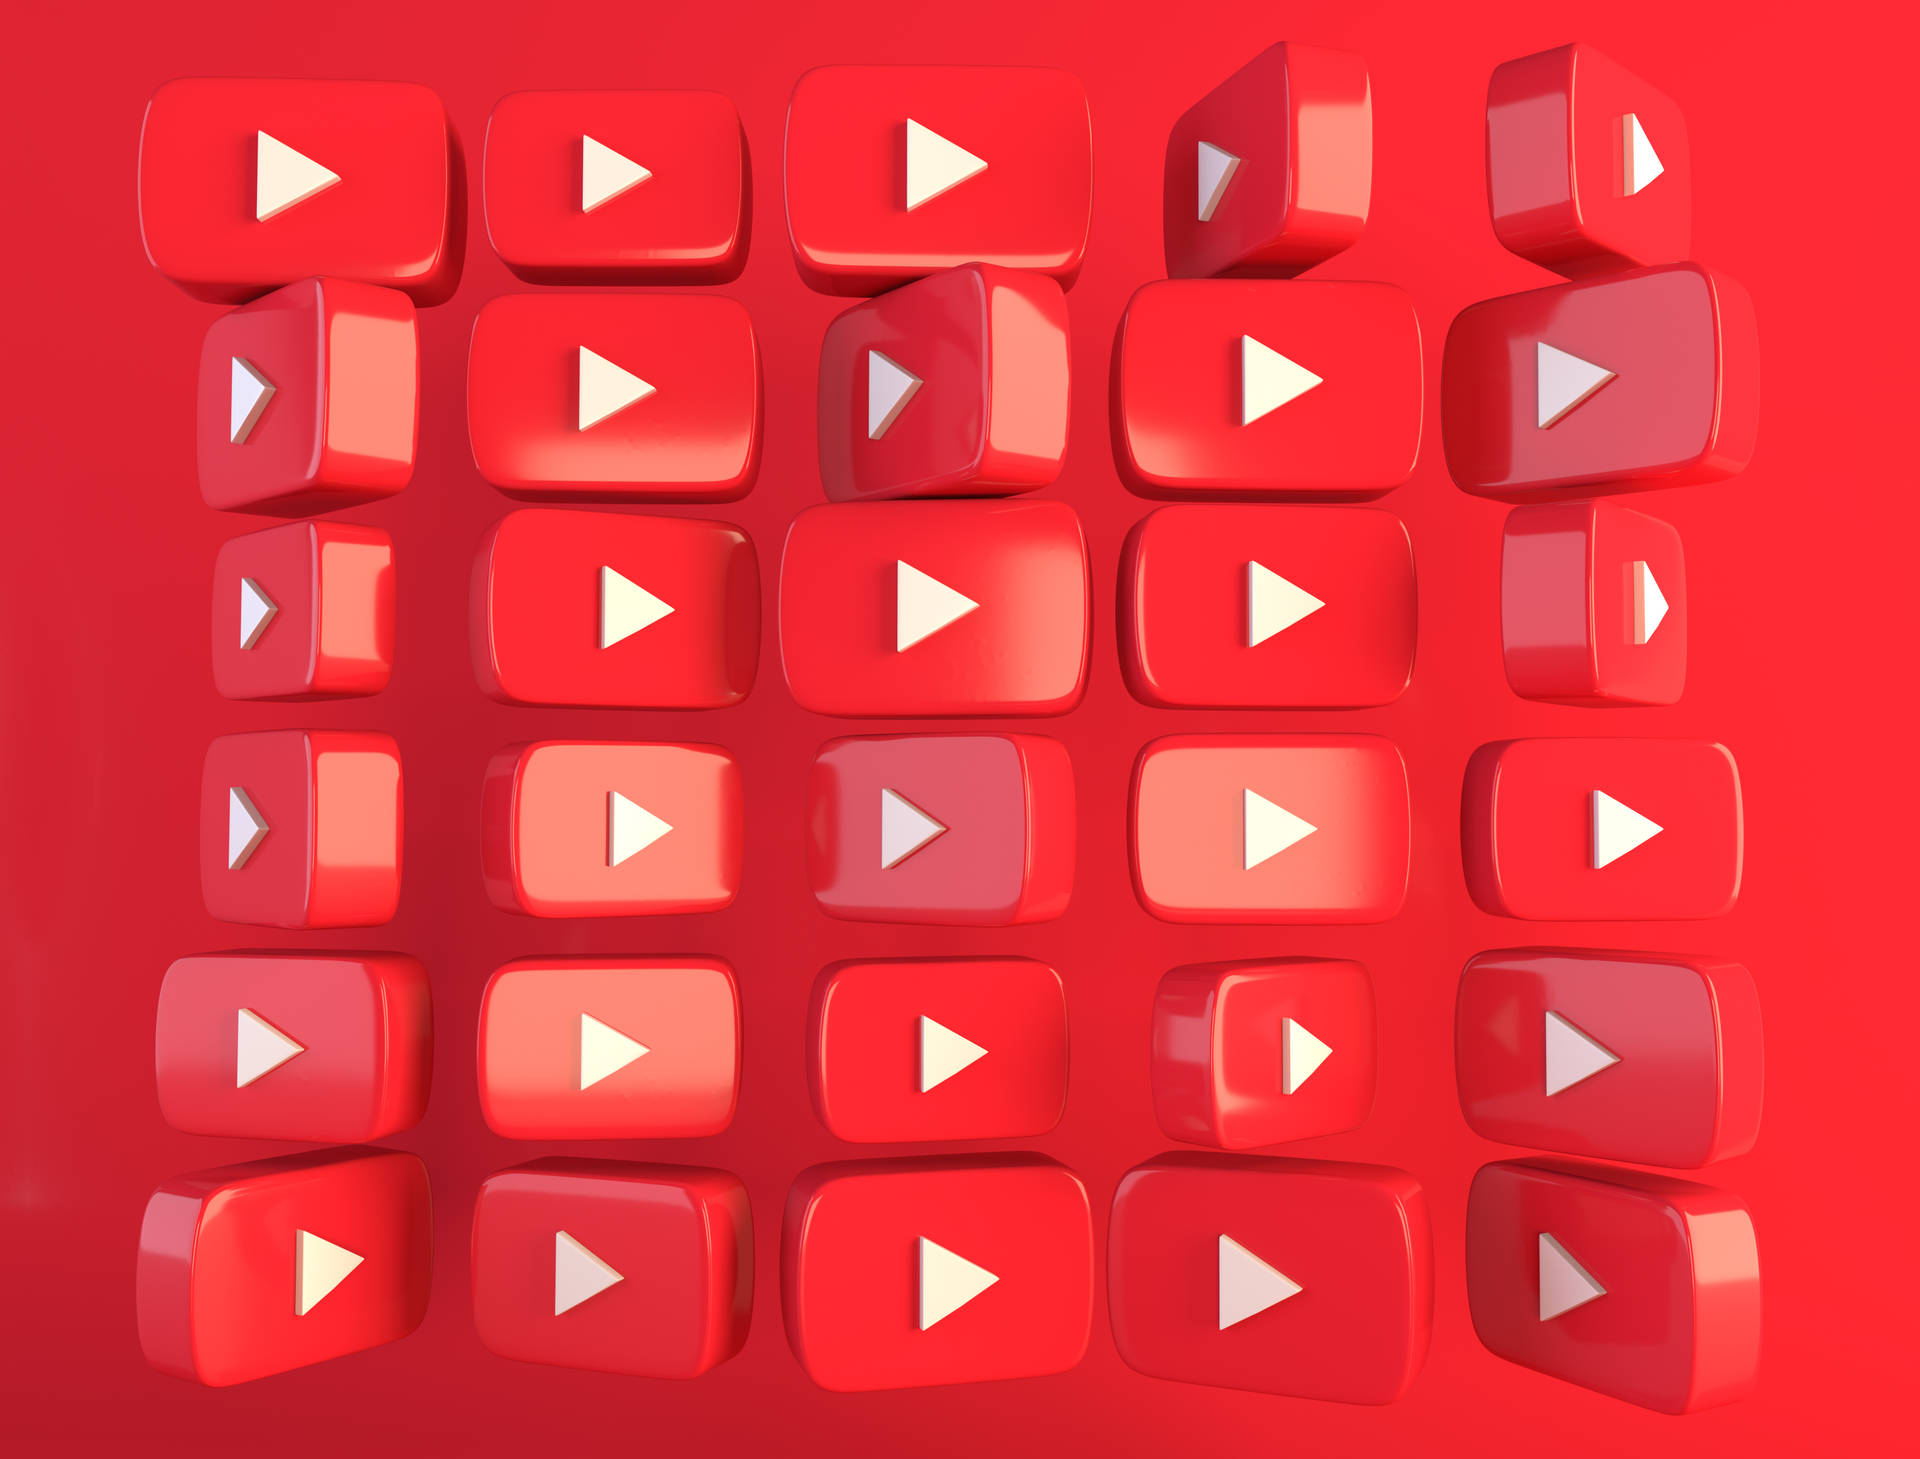 Logo Youtube 3D: Logo Youtube đã trở thành biểu tượng của cộng đồng giải trí trực tuyến toàn cầu với hàng triệu lượt xem mỗi ngày. Hãy cùng đắm chìm trong thế giới của những dòng truyền tải thông tin, cảm xúc, và niềm đam mê thông qua video và hình ảnh, truyền tải qua logo 3D đầy tinh tế này.